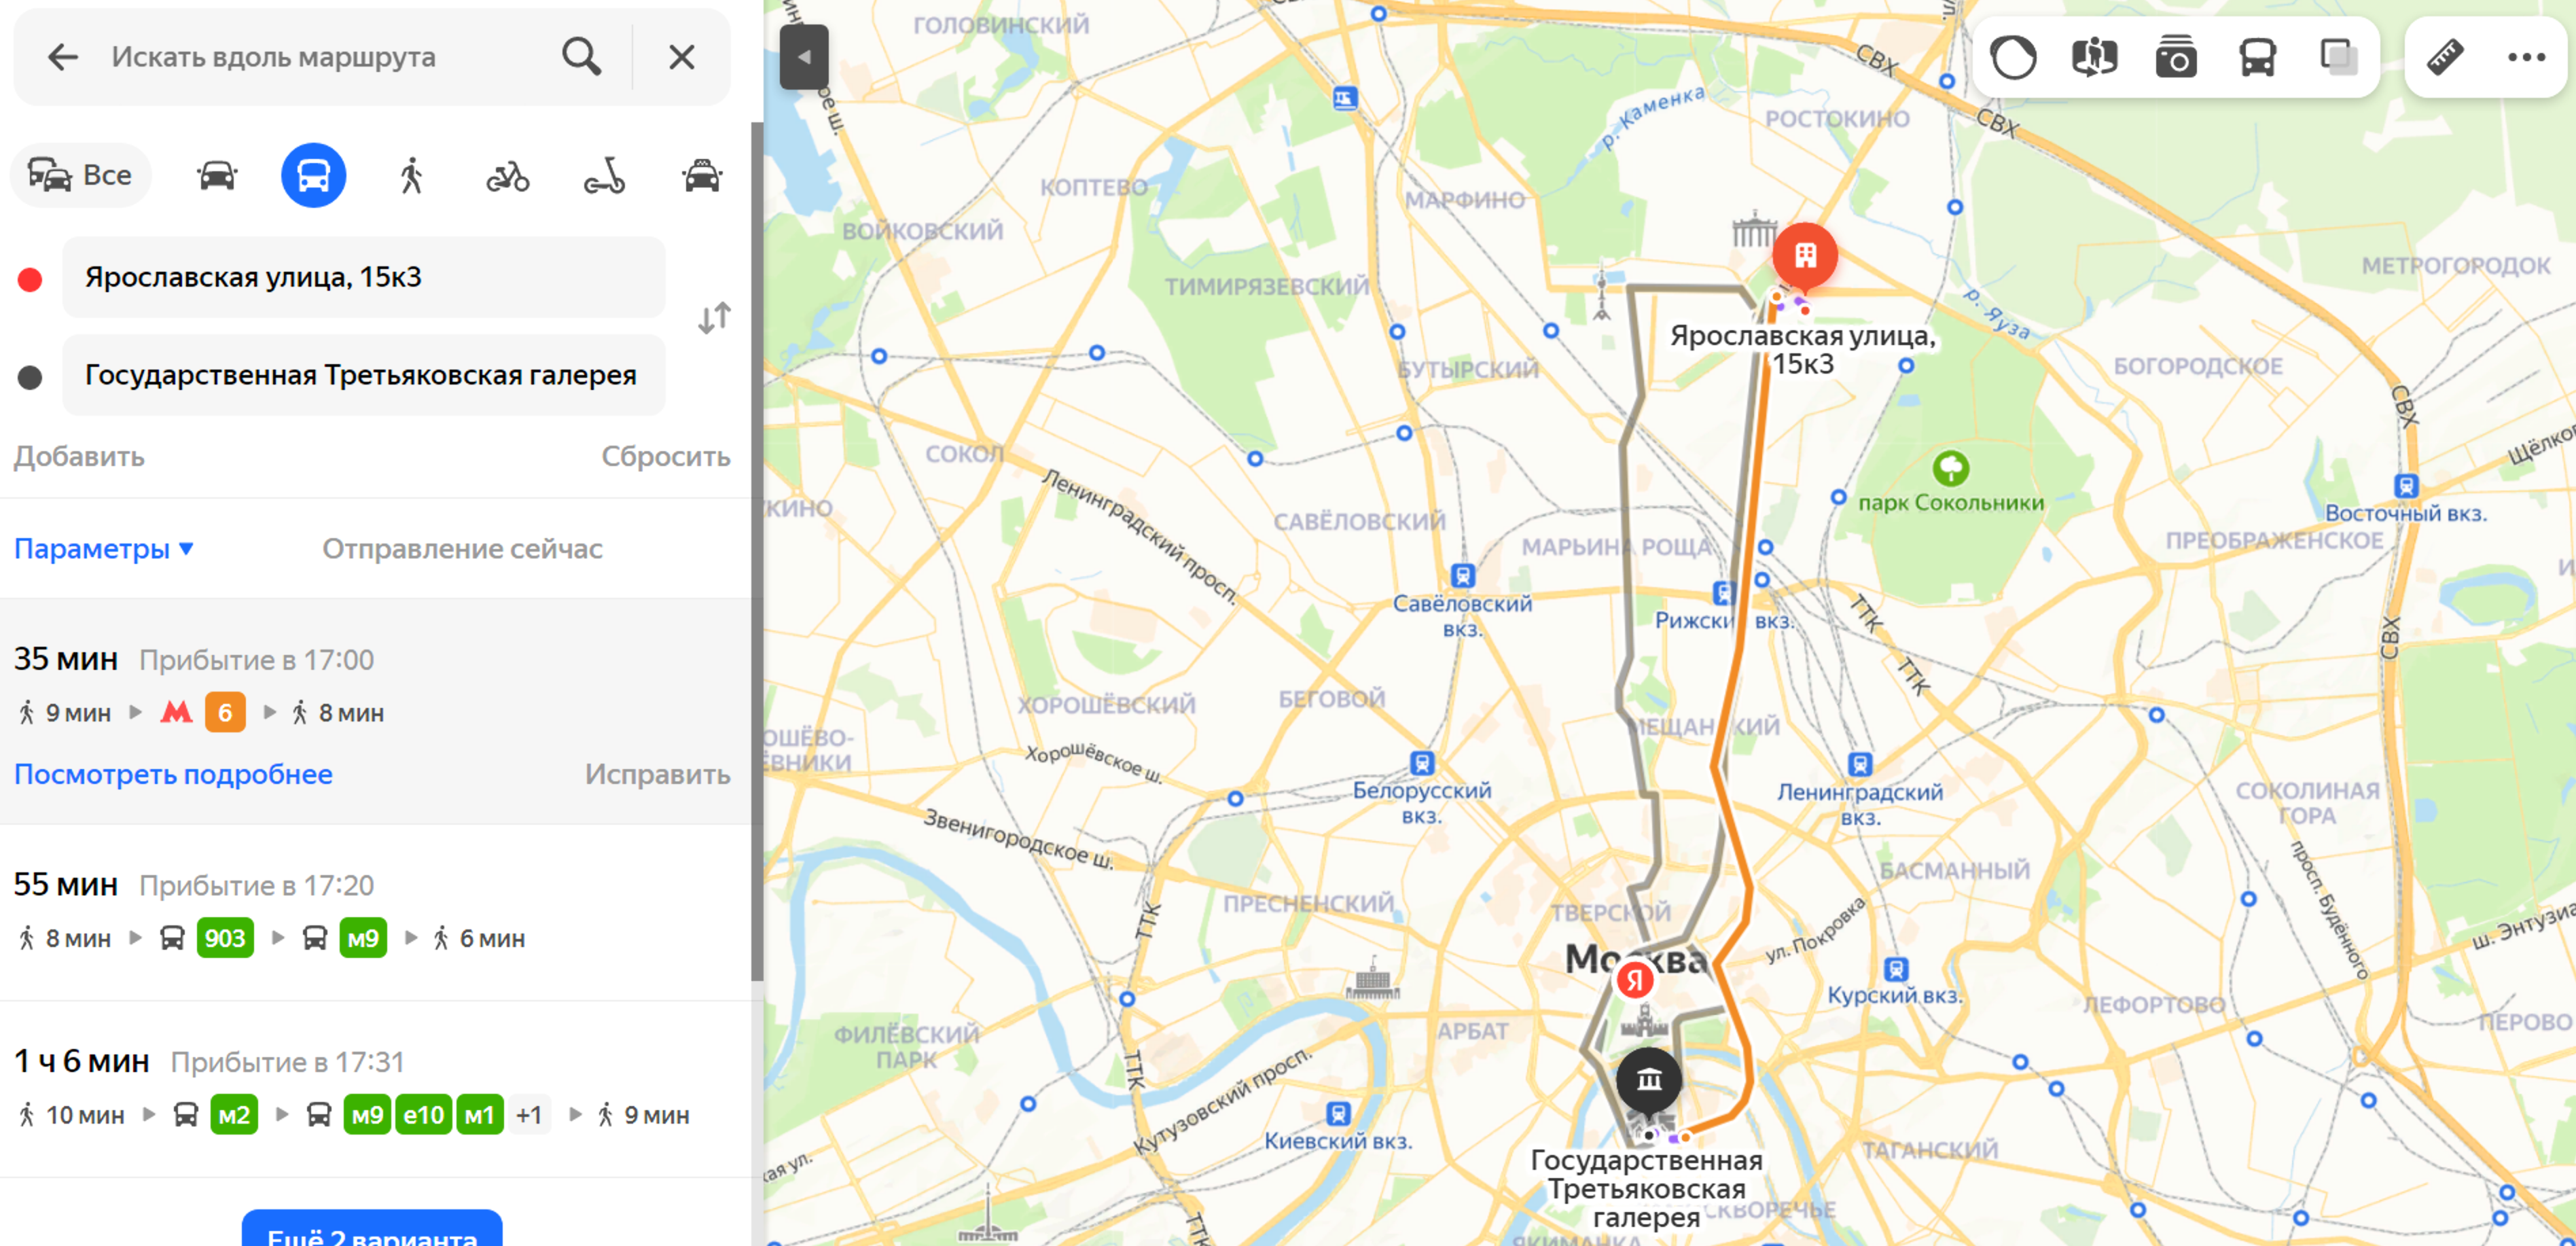 Как создавать свои карты и маршруты в Google Maps и делиться ими с друзьями